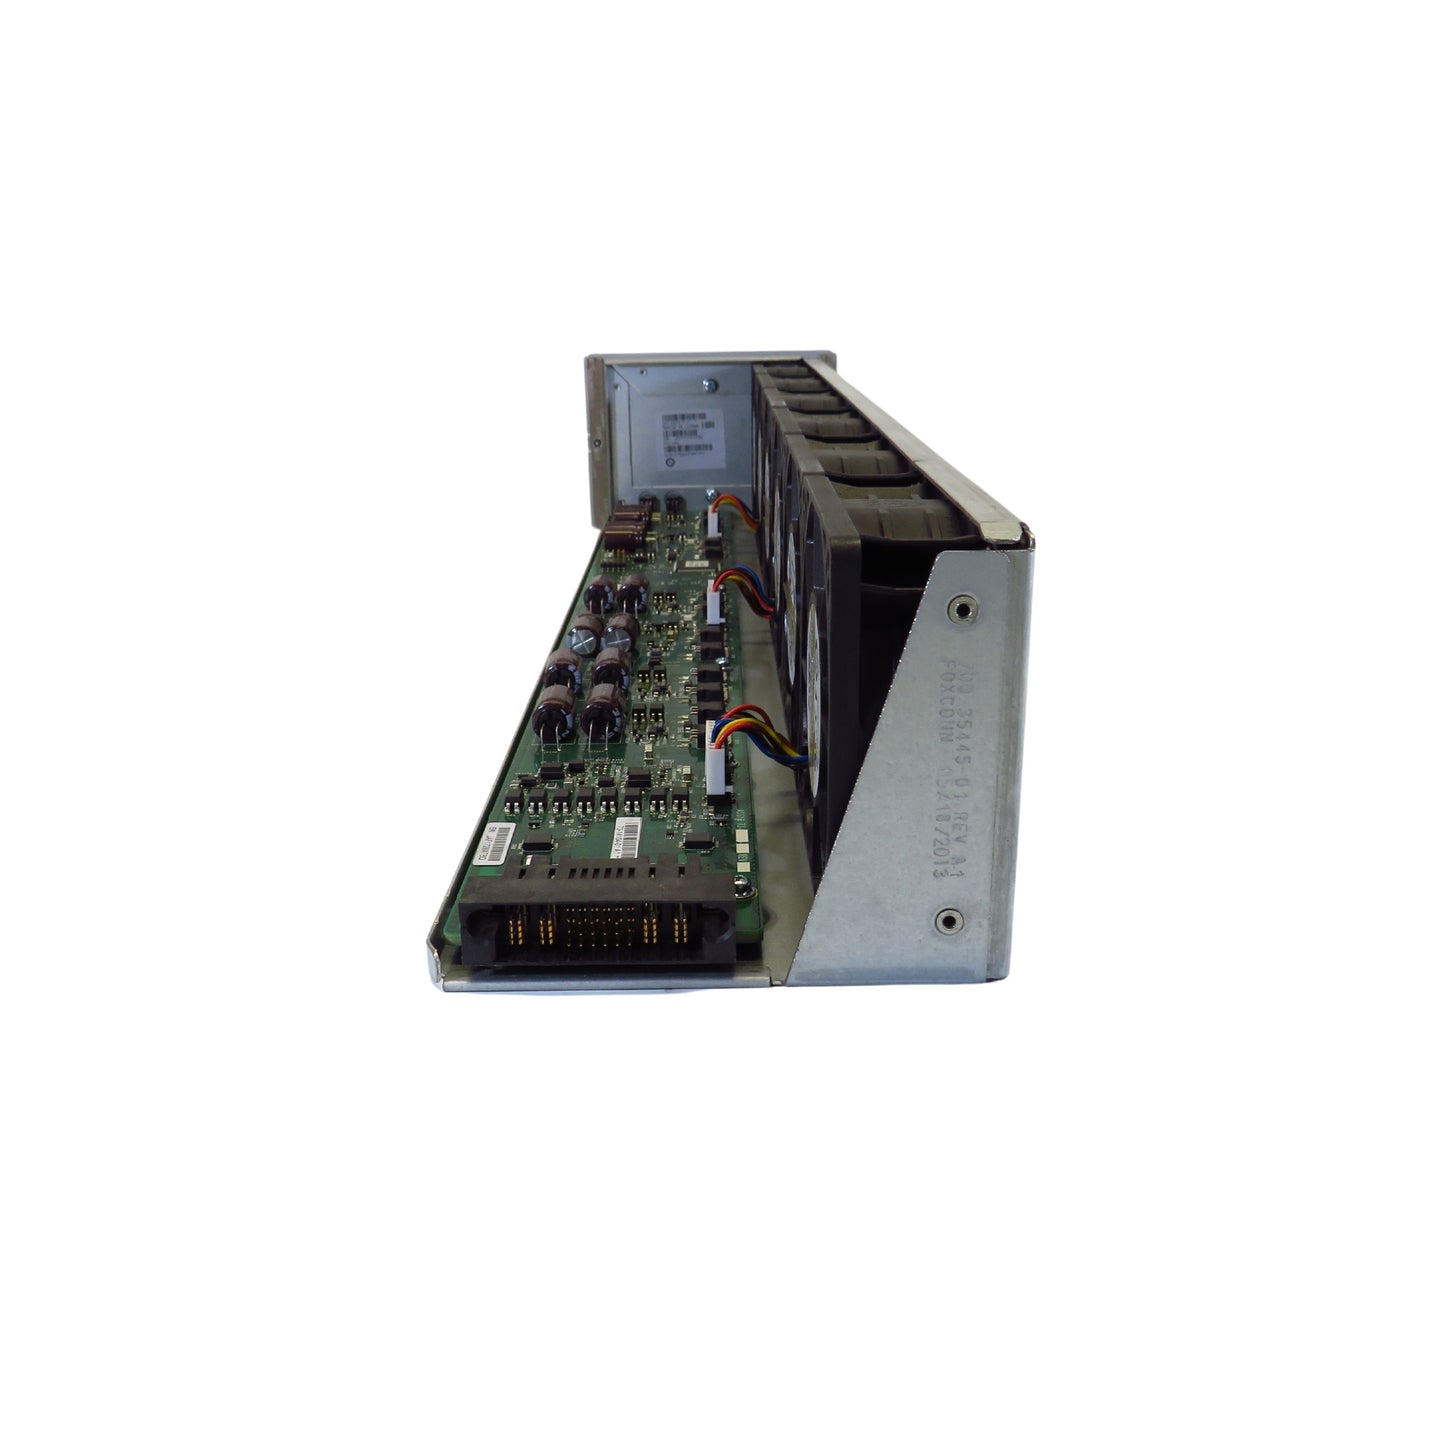 Cisco N7K-C7004-FAN Nexus 7000 Series 4-Slot System Fan Tray Module (Refurbished)